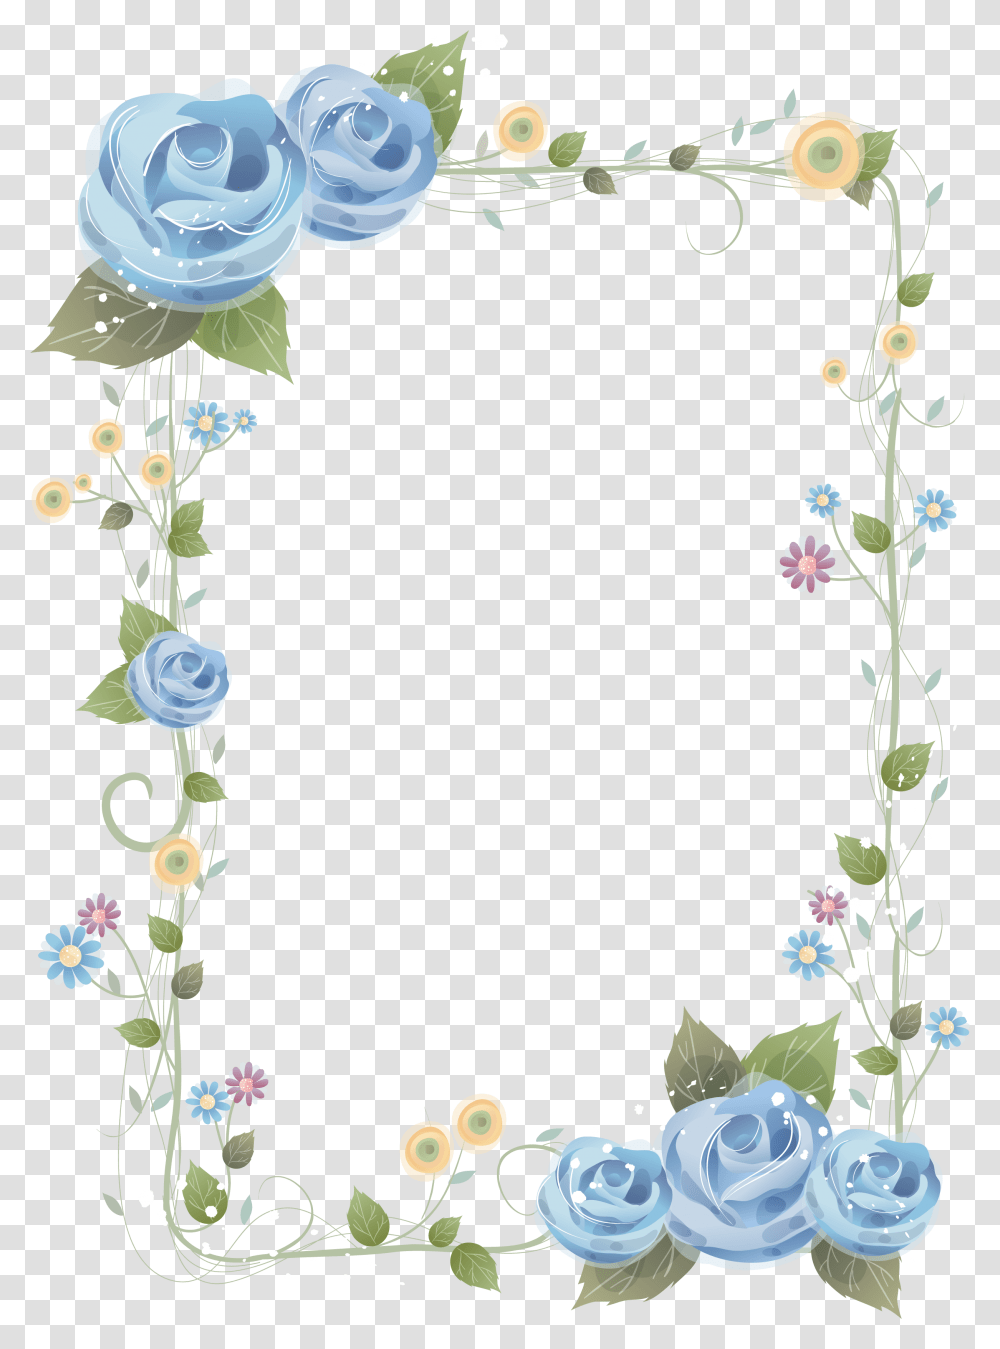 Background Frame Flower Hd, Construction Crane Transparent Png